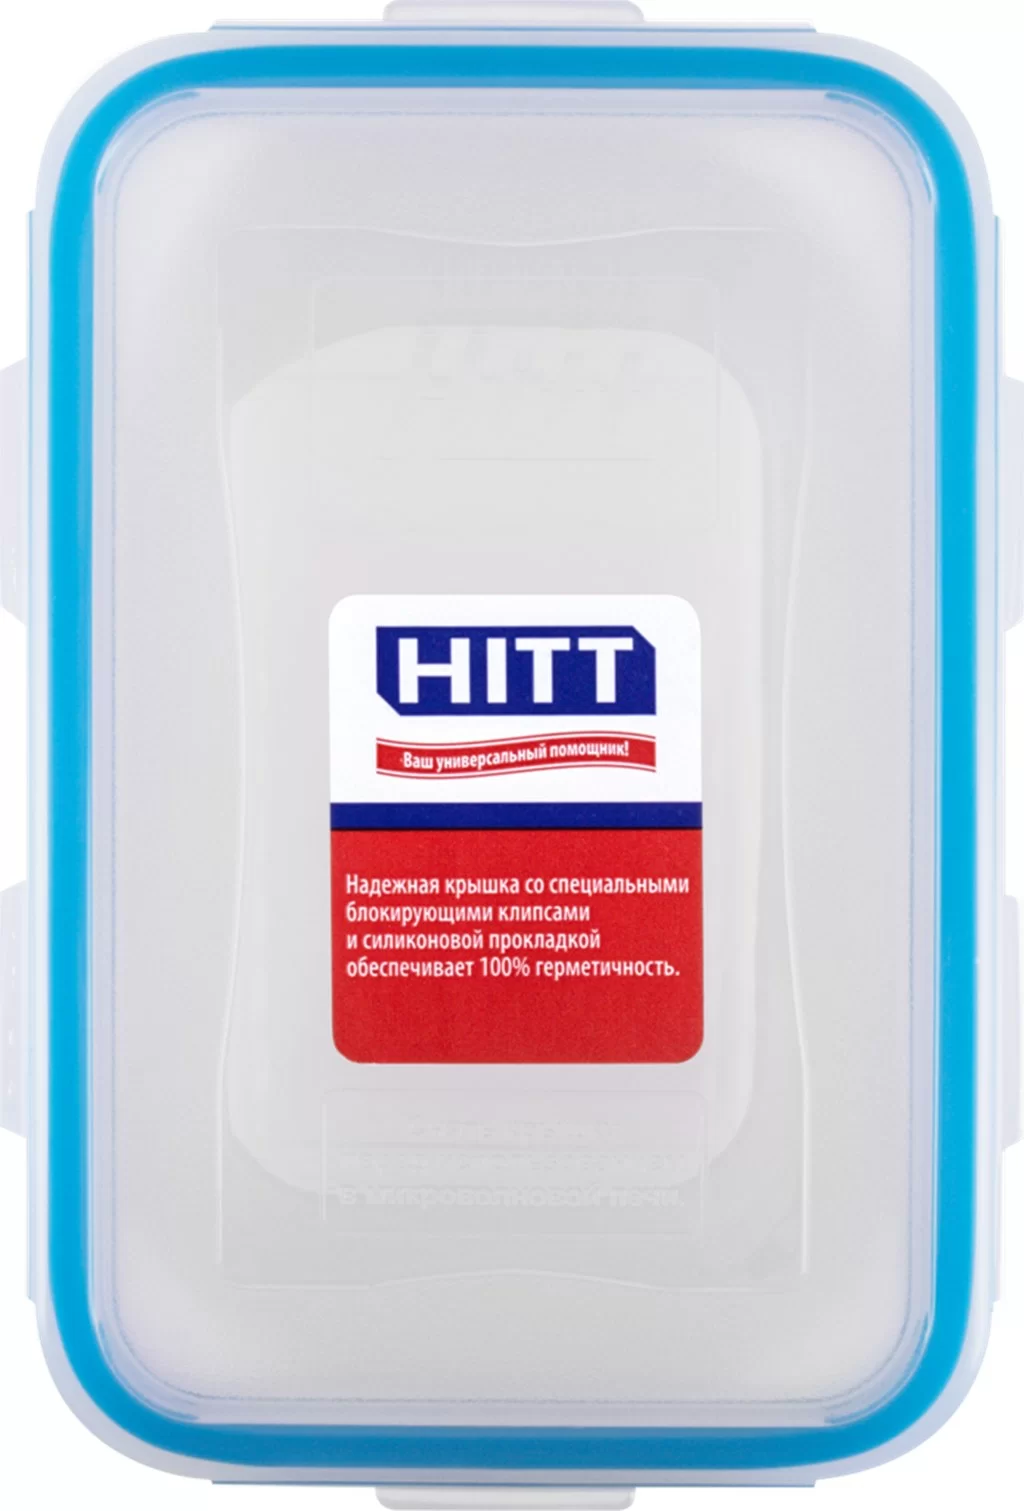 Контейнер для продуктов Hitt 1.48л герметичный прямоугольный H241015